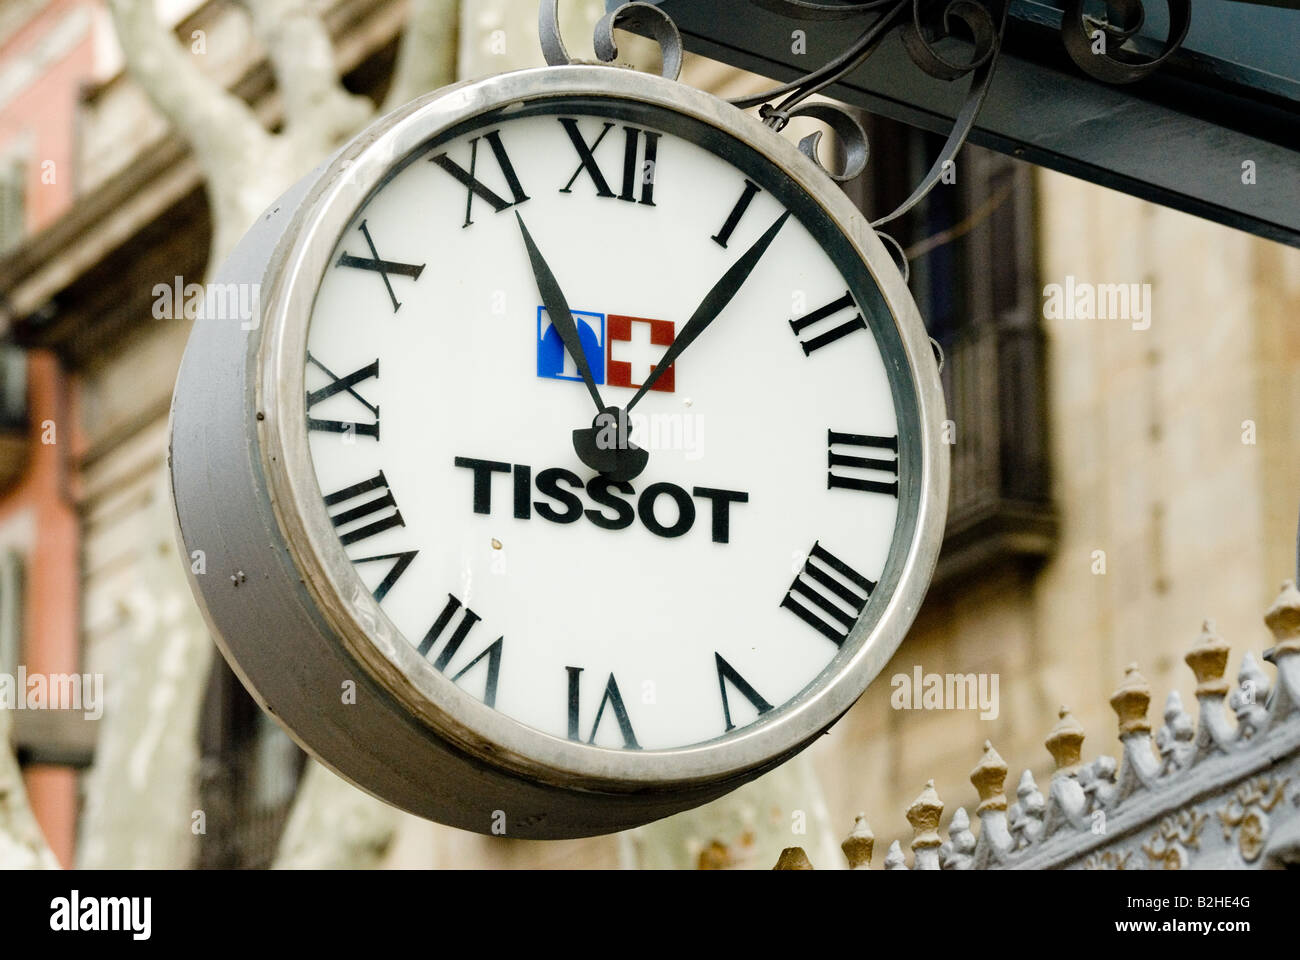 Tissot Uhr mit Schweizer Flagge außerhalb Wachsfigurenkabinett barcelona  Stockfotografie - Alamy